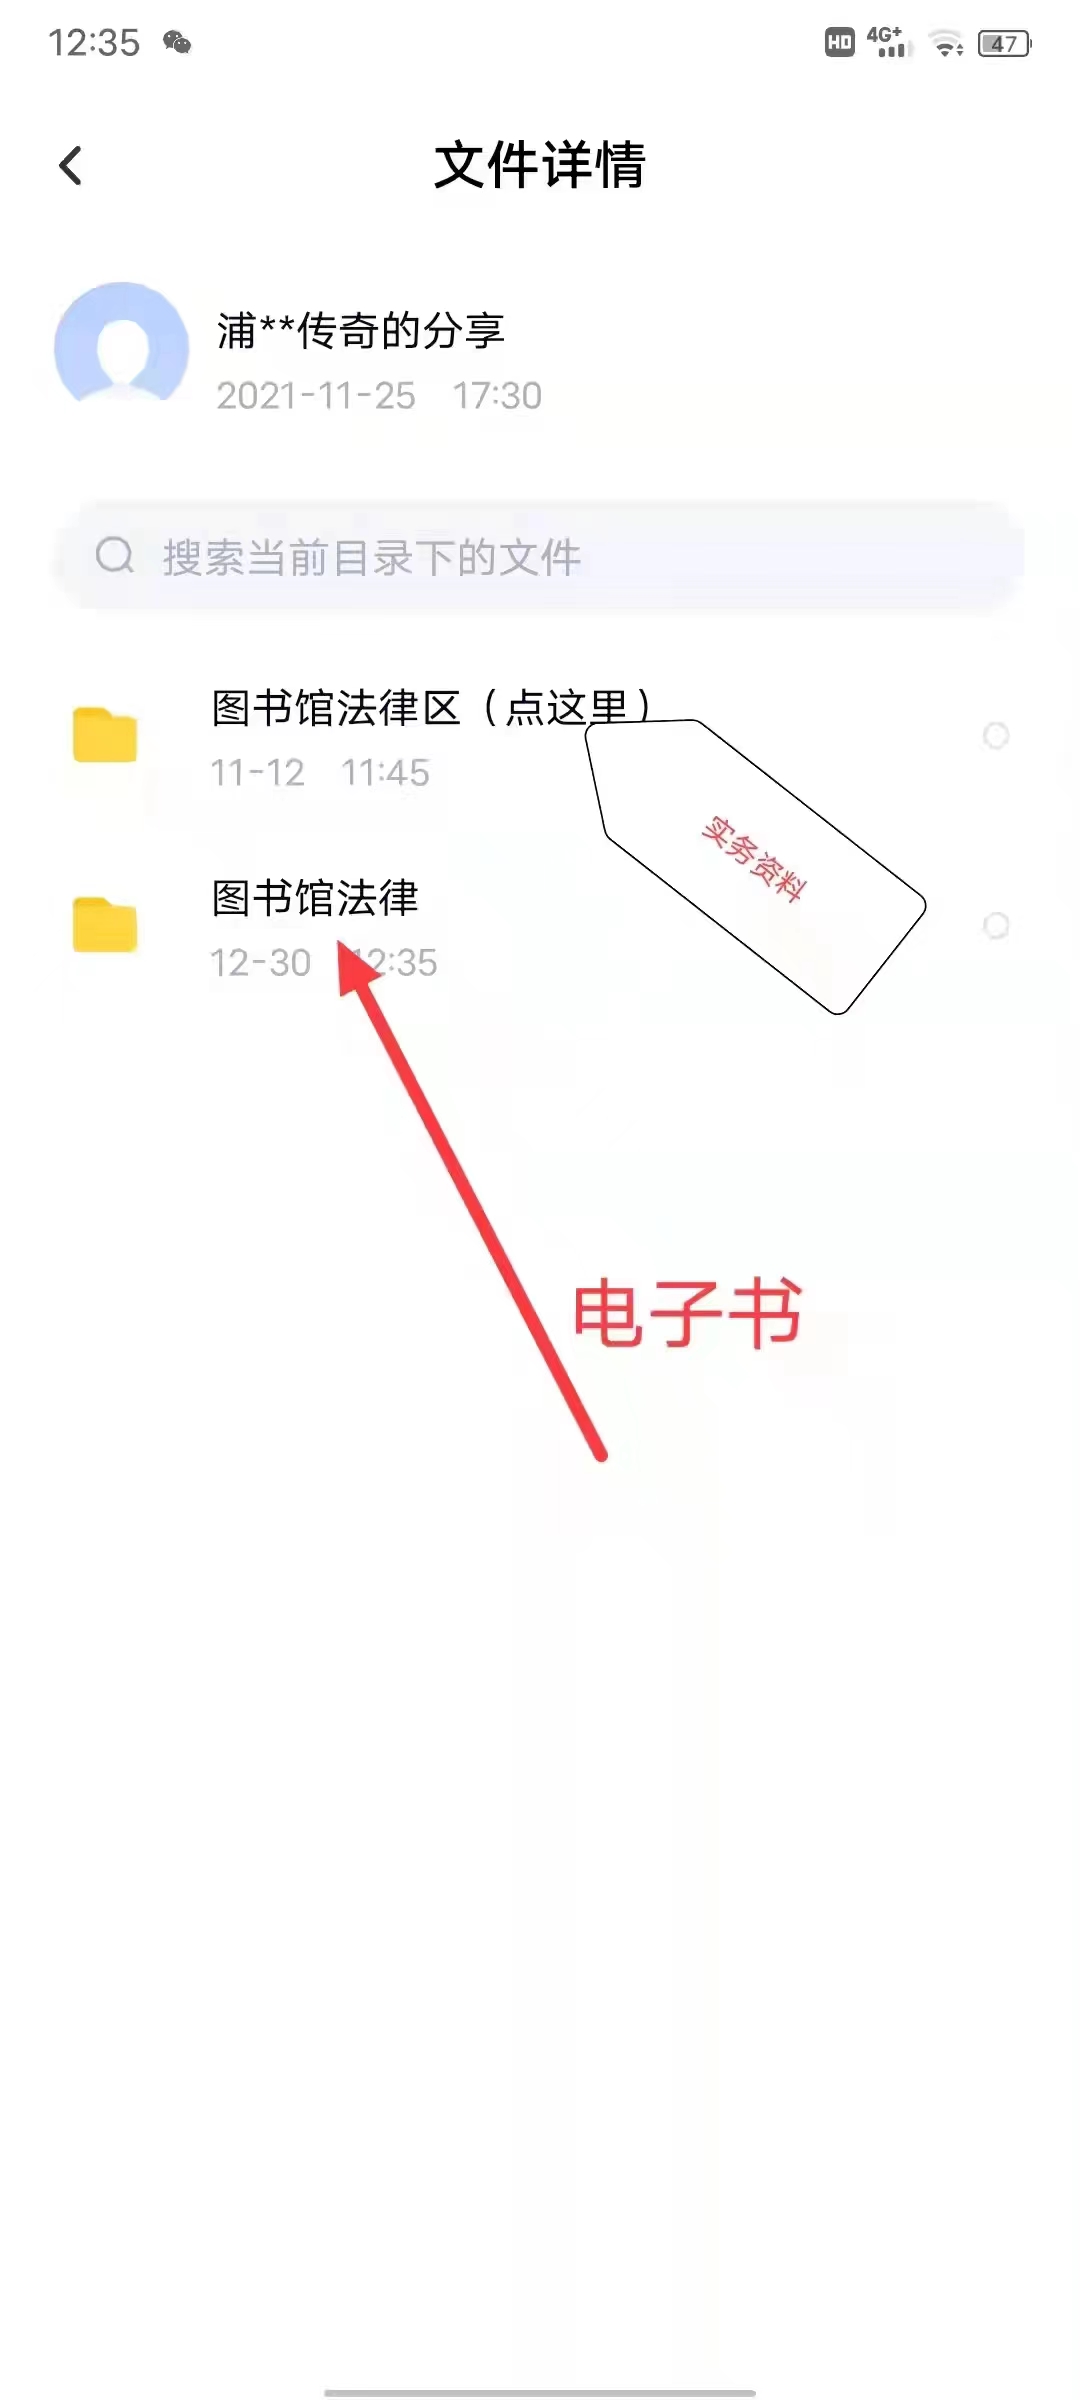 【法律】【PDF】241 中华人民共和国社会保险法典 (注释法典)